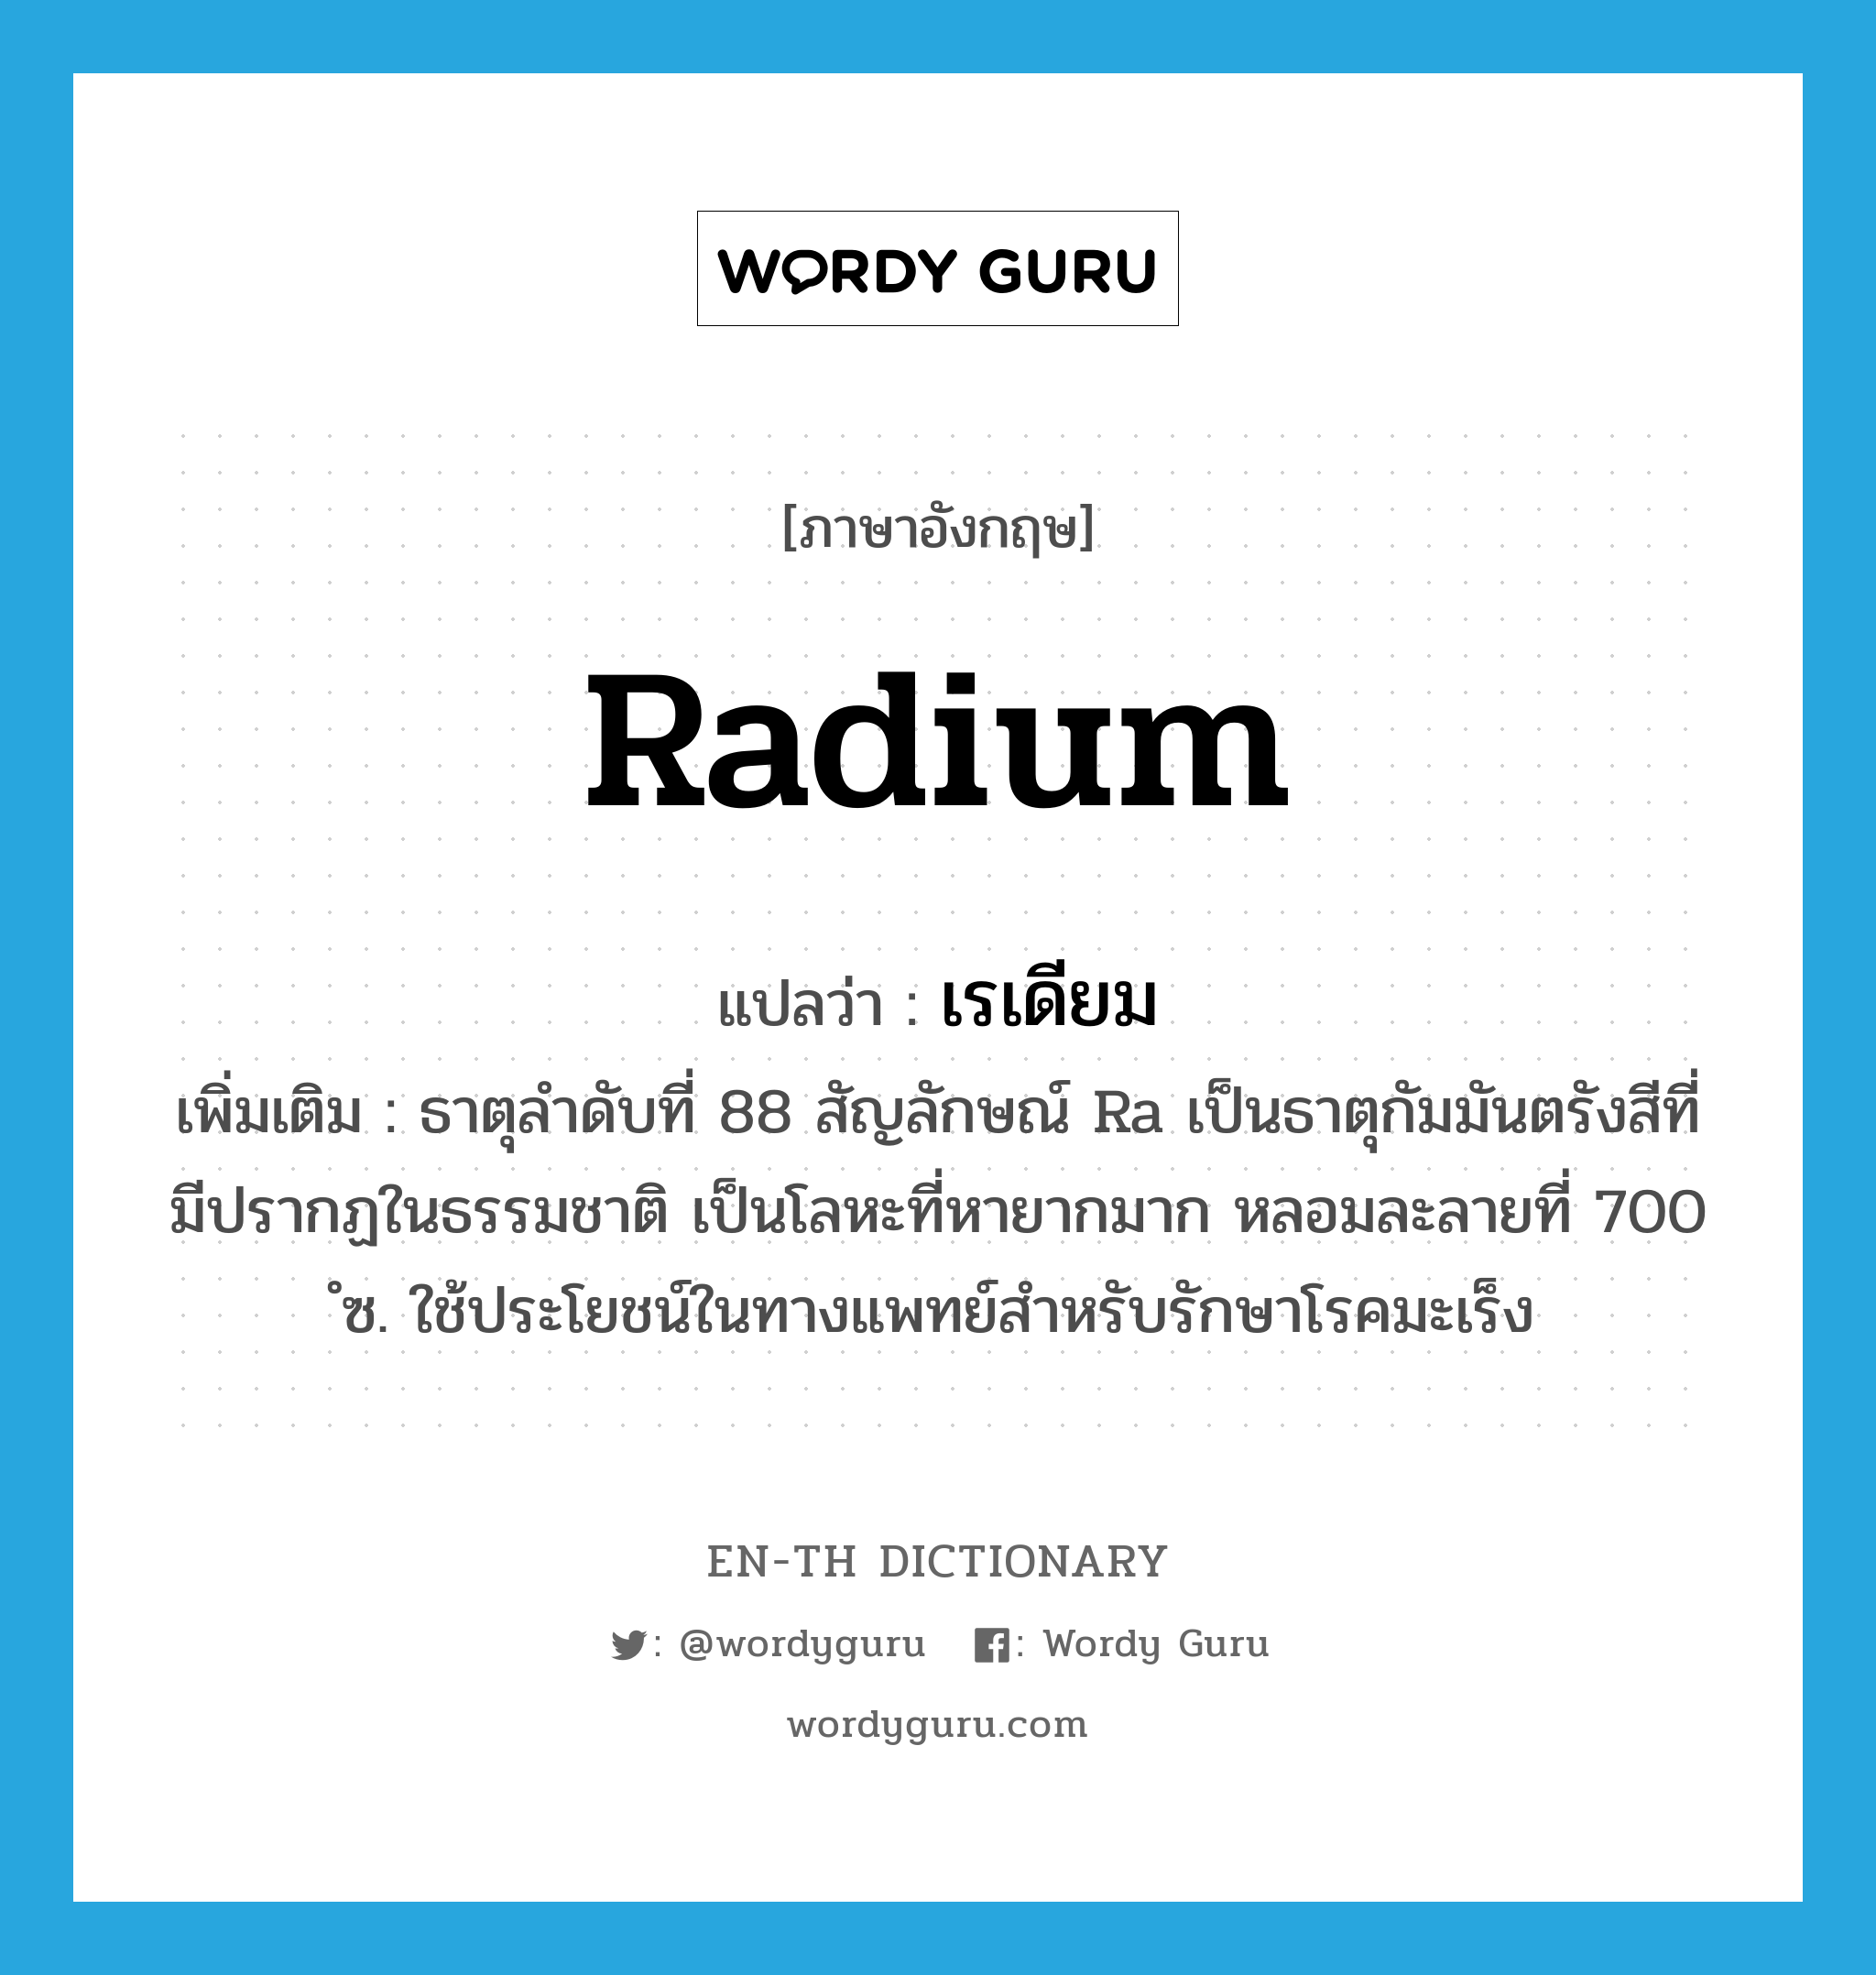 เรเดียม ภาษาอังกฤษ?, คำศัพท์ภาษาอังกฤษ เรเดียม แปลว่า radium ประเภท N เพิ่มเติม ธาตุลำดับที่ 88 สัญลักษณ์ Ra เป็นธาตุกัมมันตรังสีที่มีปรากฏในธรรมชาติ เป็นโลหะที่หายากมาก หลอมละลายที่ 700 ํซ. ใช้ประโยชน์ในทางแพทย์สำหรับรักษาโรคมะเร็ง หมวด N